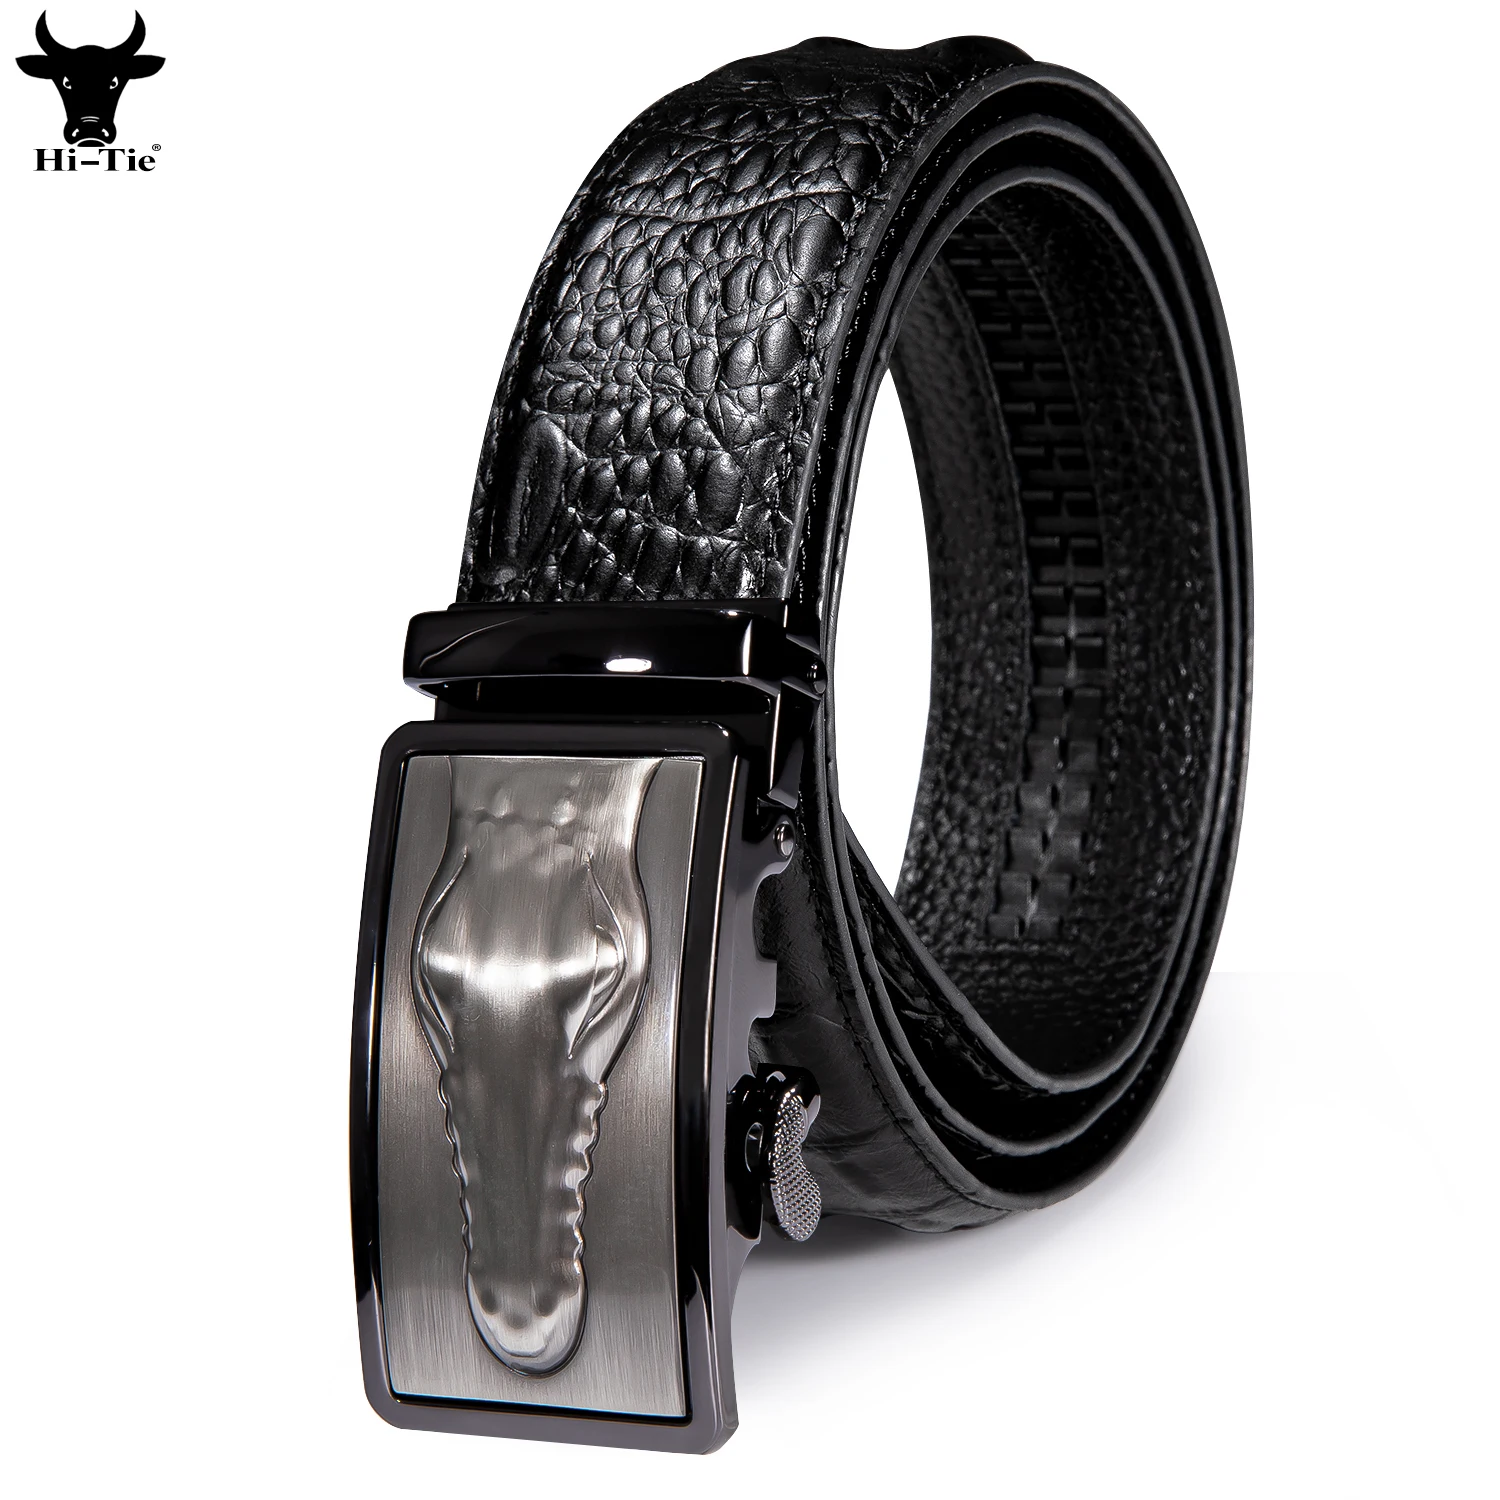 Hi-Tie Automatic Buckles Mens Belts Black Crocodile Pattern Leather Ratchet Vintage Waistband Belt for Men Jeans Dress Cowboy XL